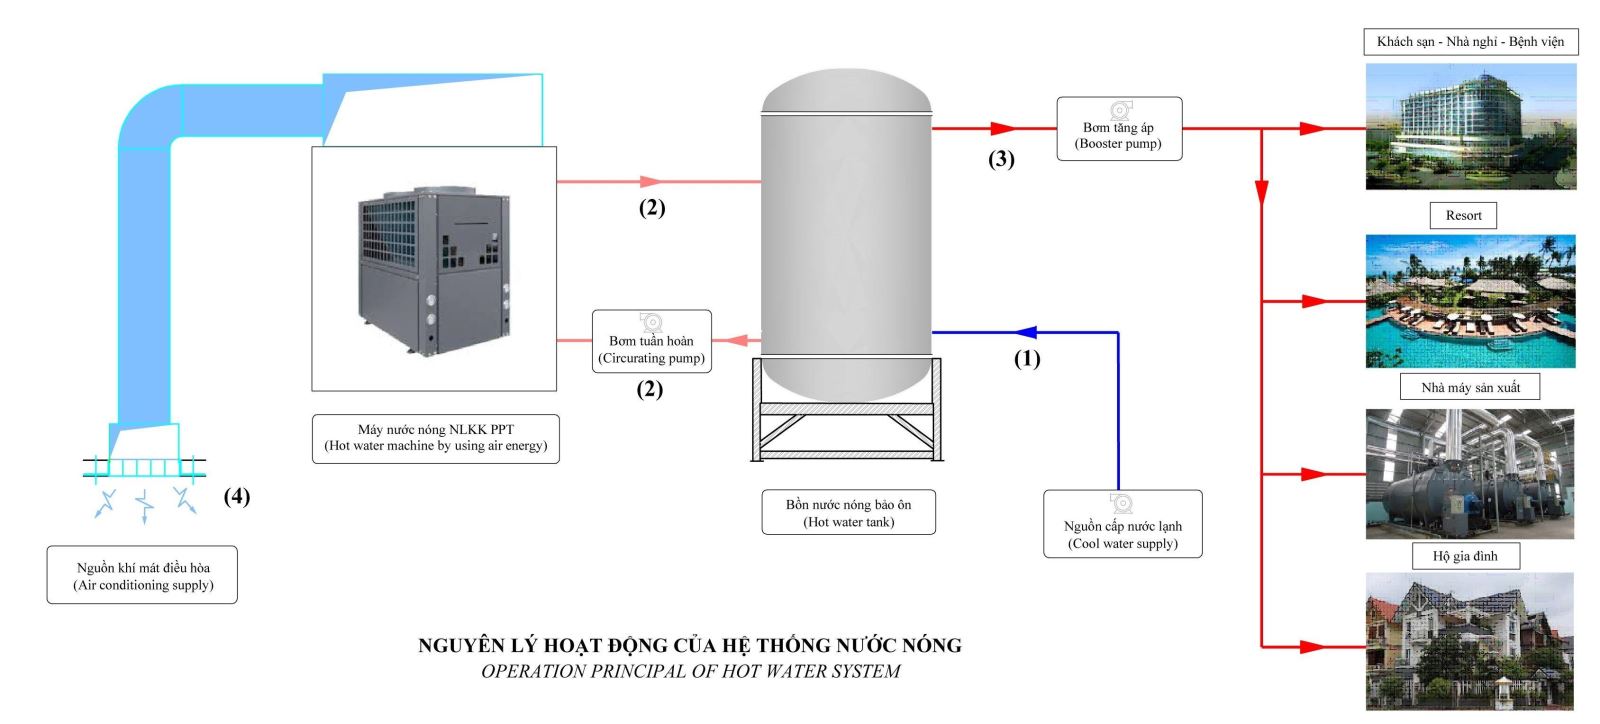 Máy nước nóng năng lượng không khí – bơm nhiệt (Heat pump) giá tốt tại Quảng Ninh - Ảnh 2